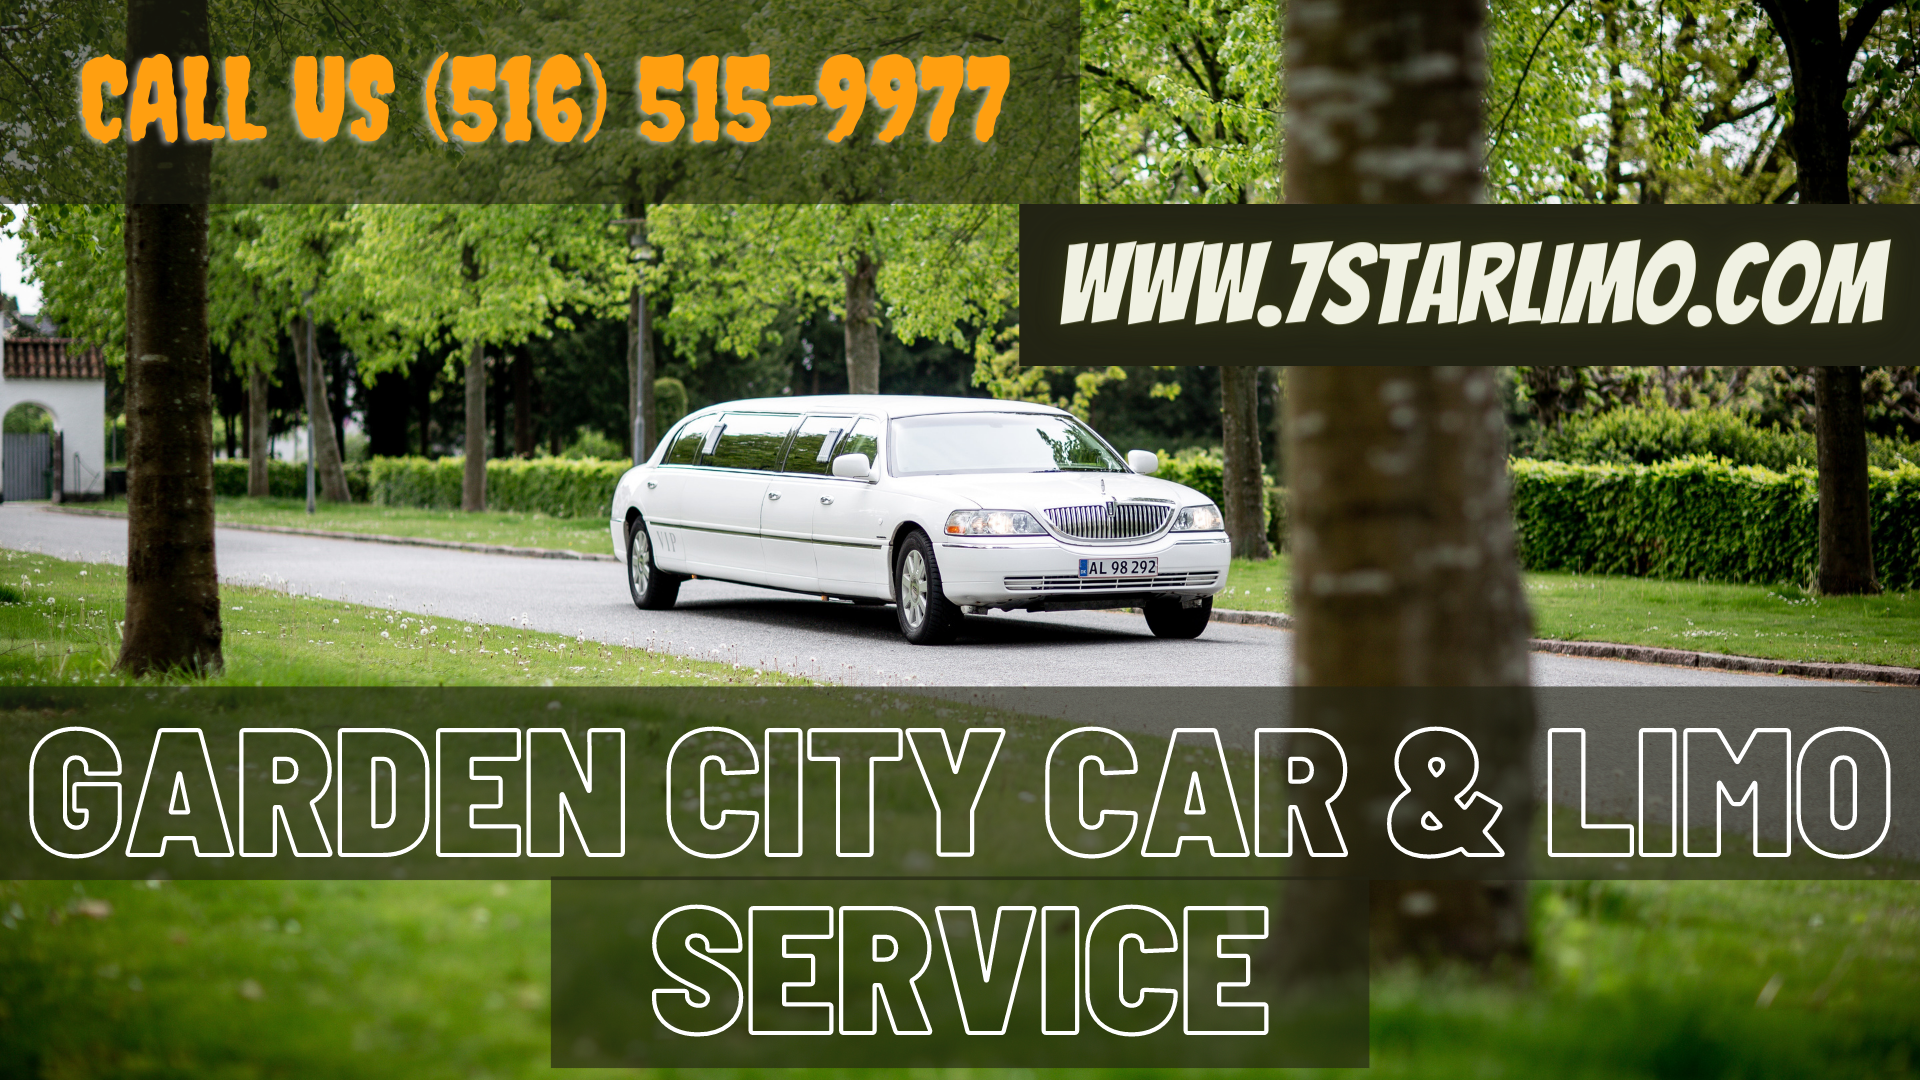 Garden City Car & Limo Service